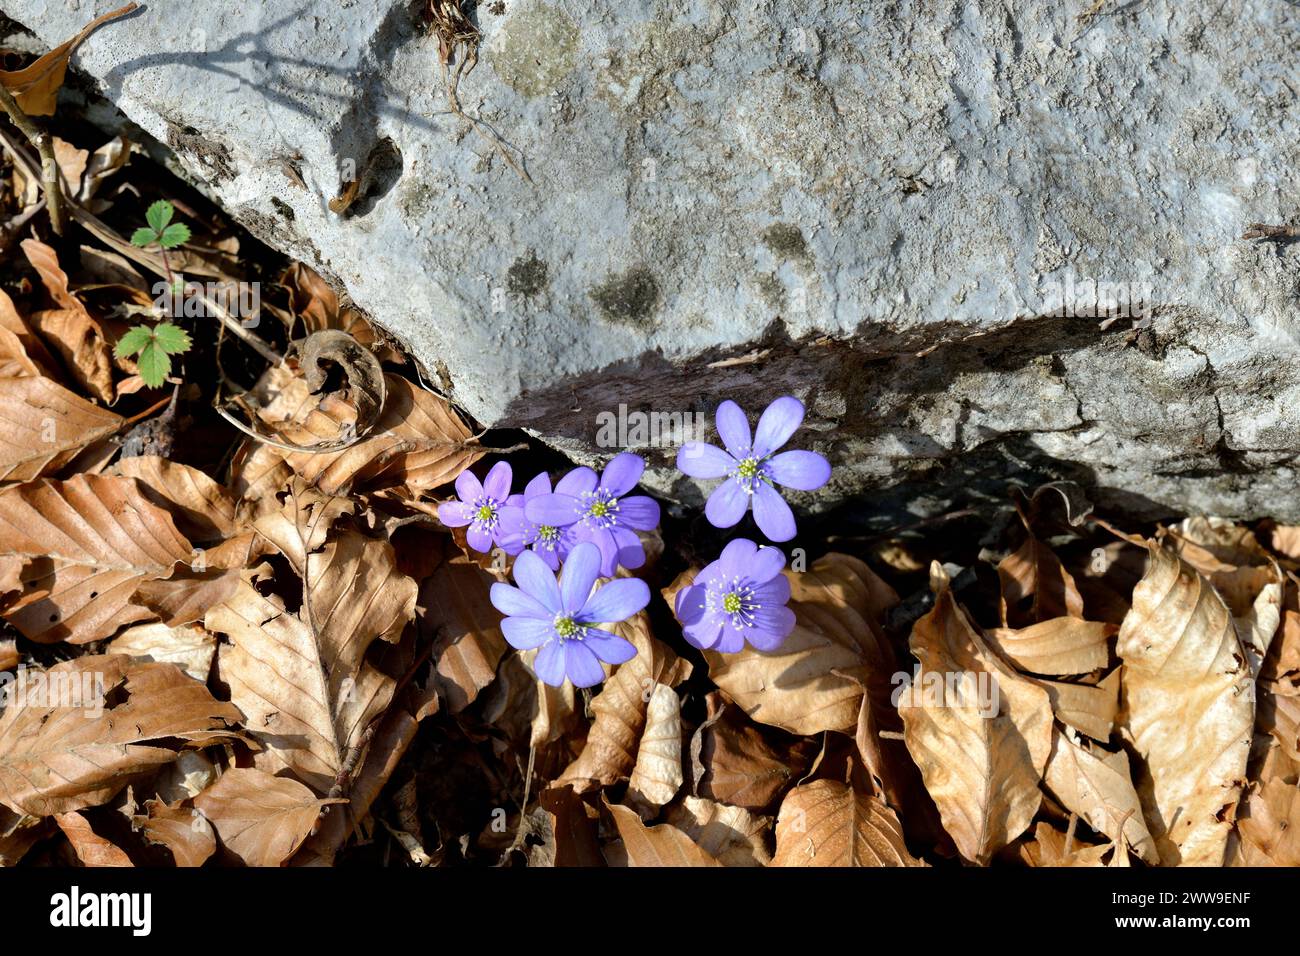 Gemeinsame hepatica / Anemone hepatica Blume, die zwischen einem Felsen und trockenen Blättern gewachsen ist Stockfoto